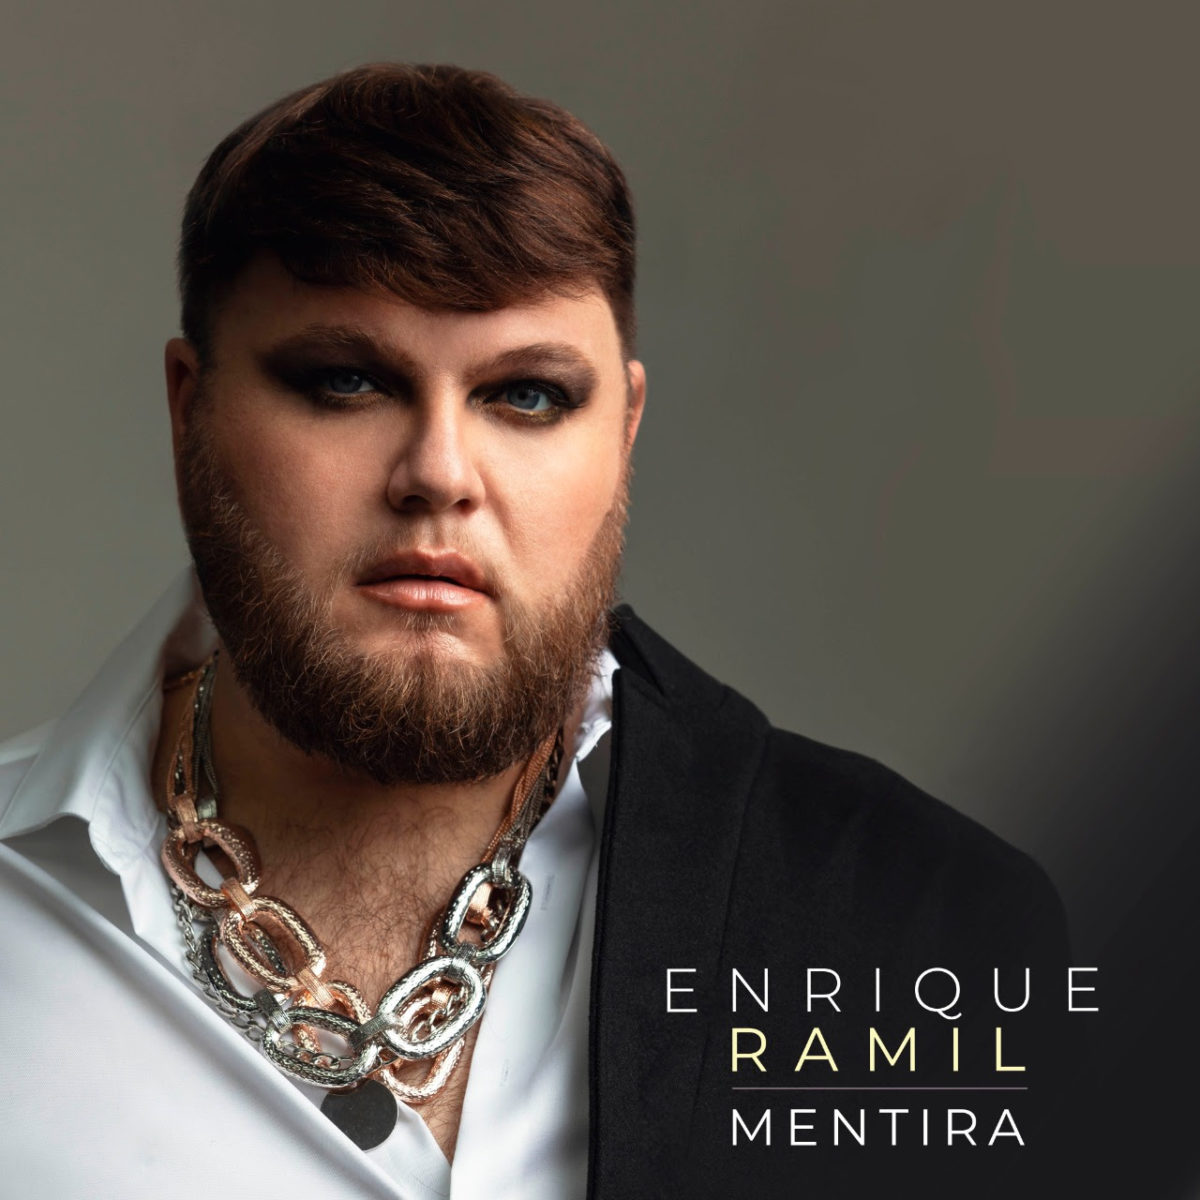 El español Enrique Ramil presenta el sencillo ‘Mentira’ – @EnriqueRamil